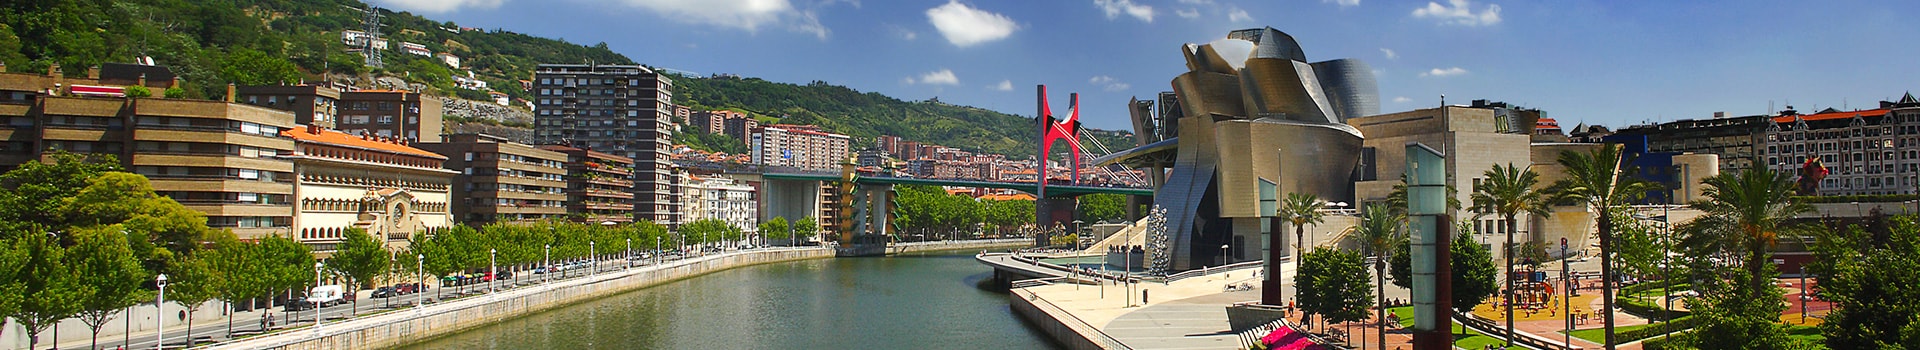 Lisboa - Bilbao